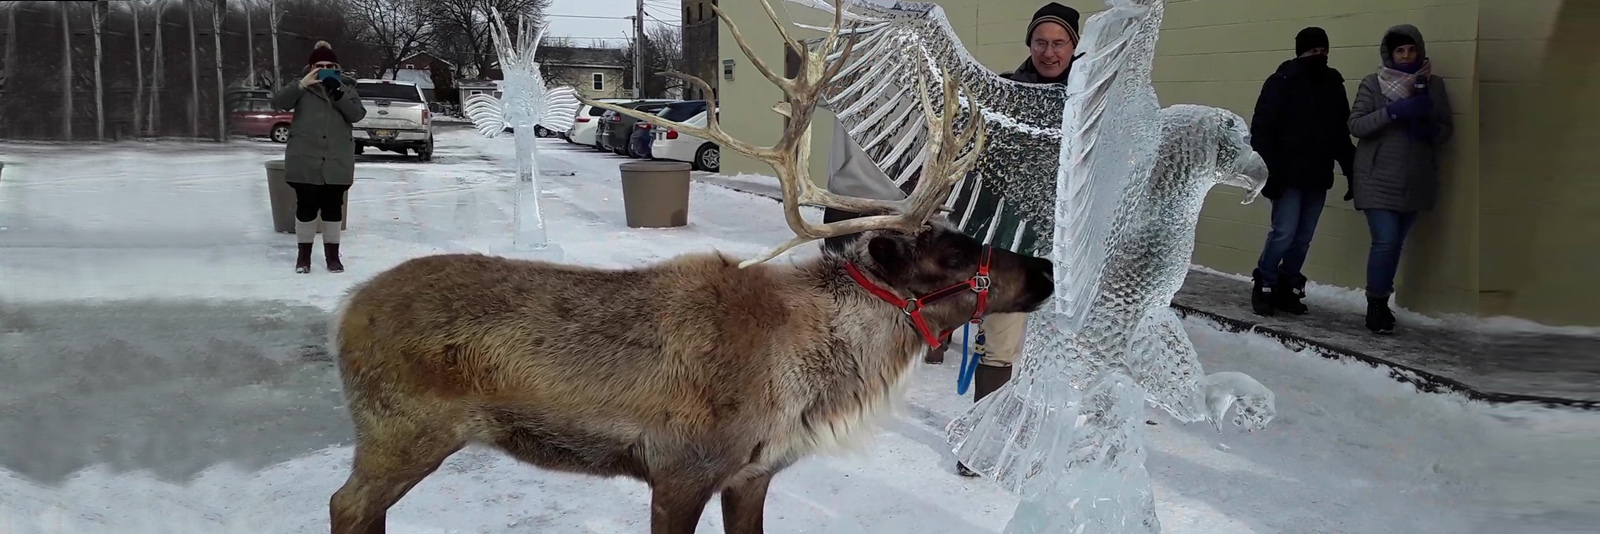 Reindeer licking an ice sculpture of an eagle